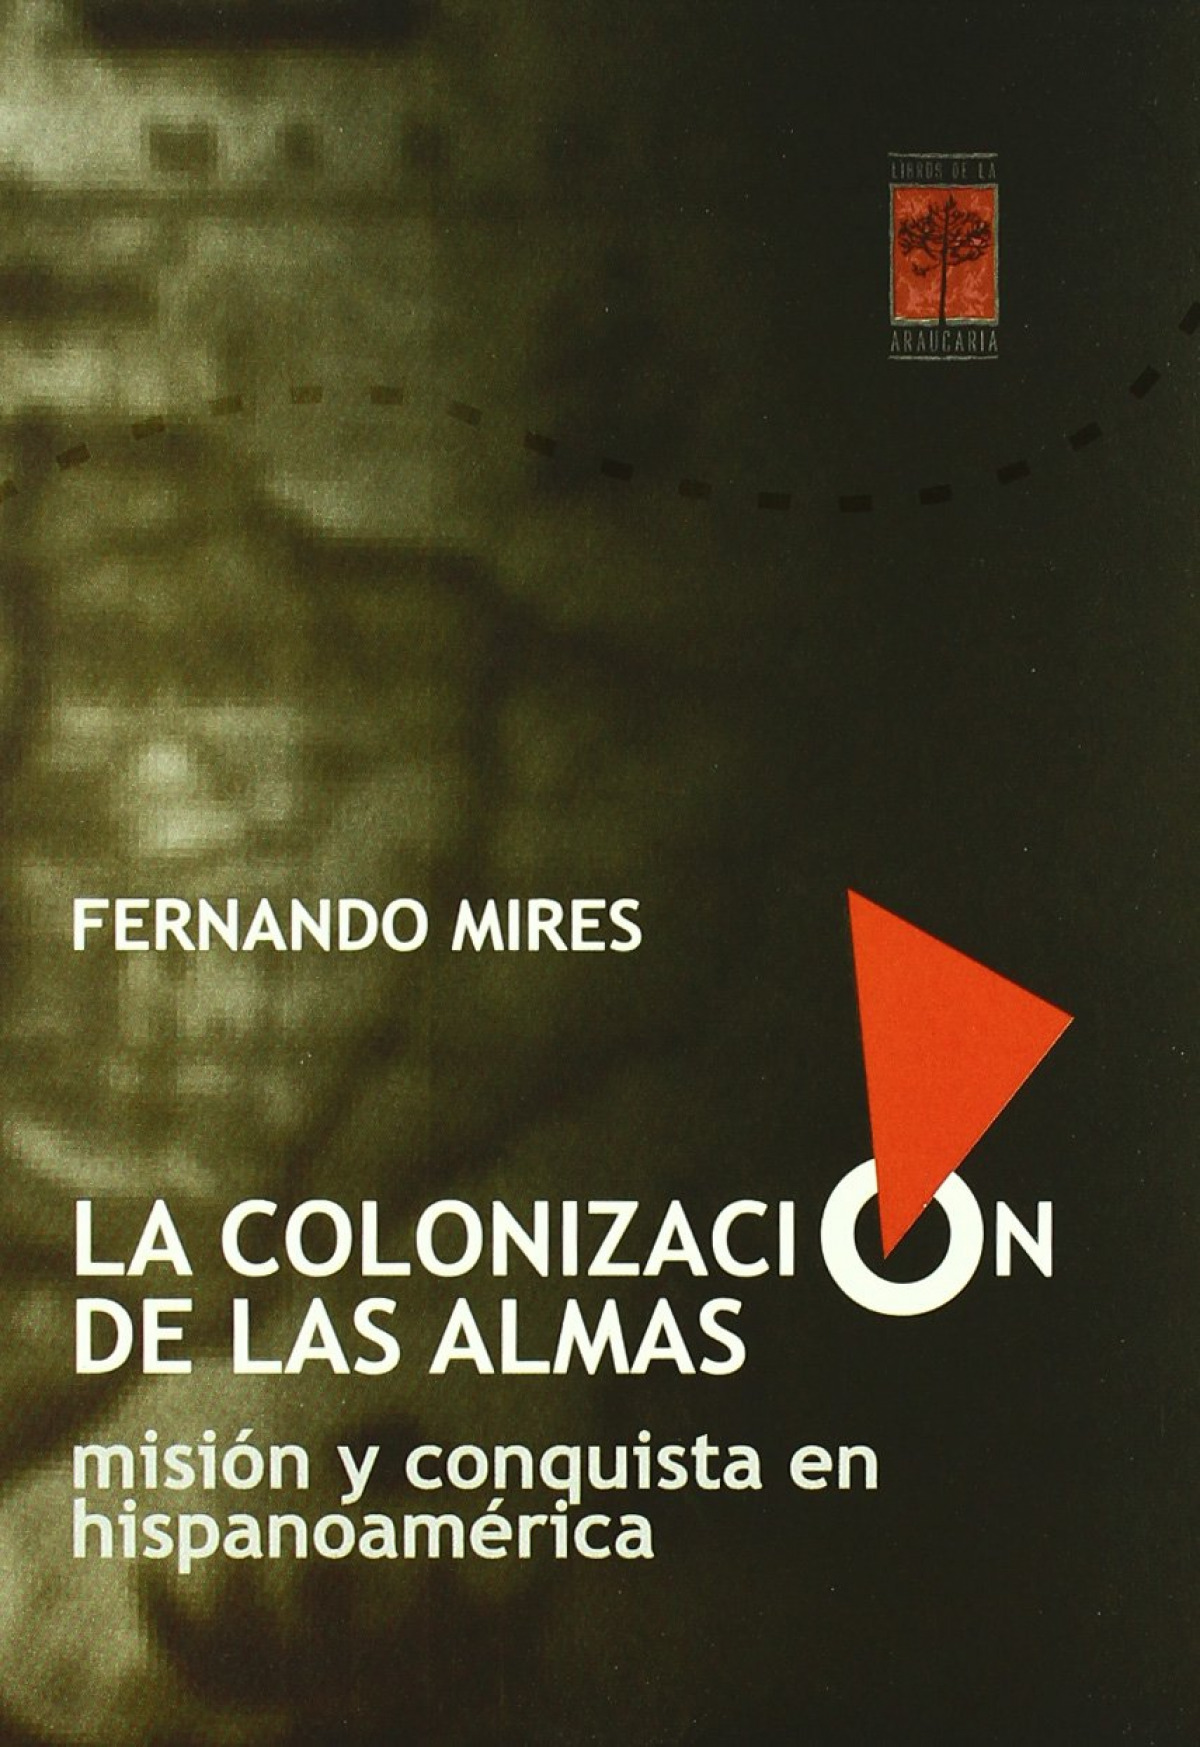 Colonizacion almas - Mires, Fernando